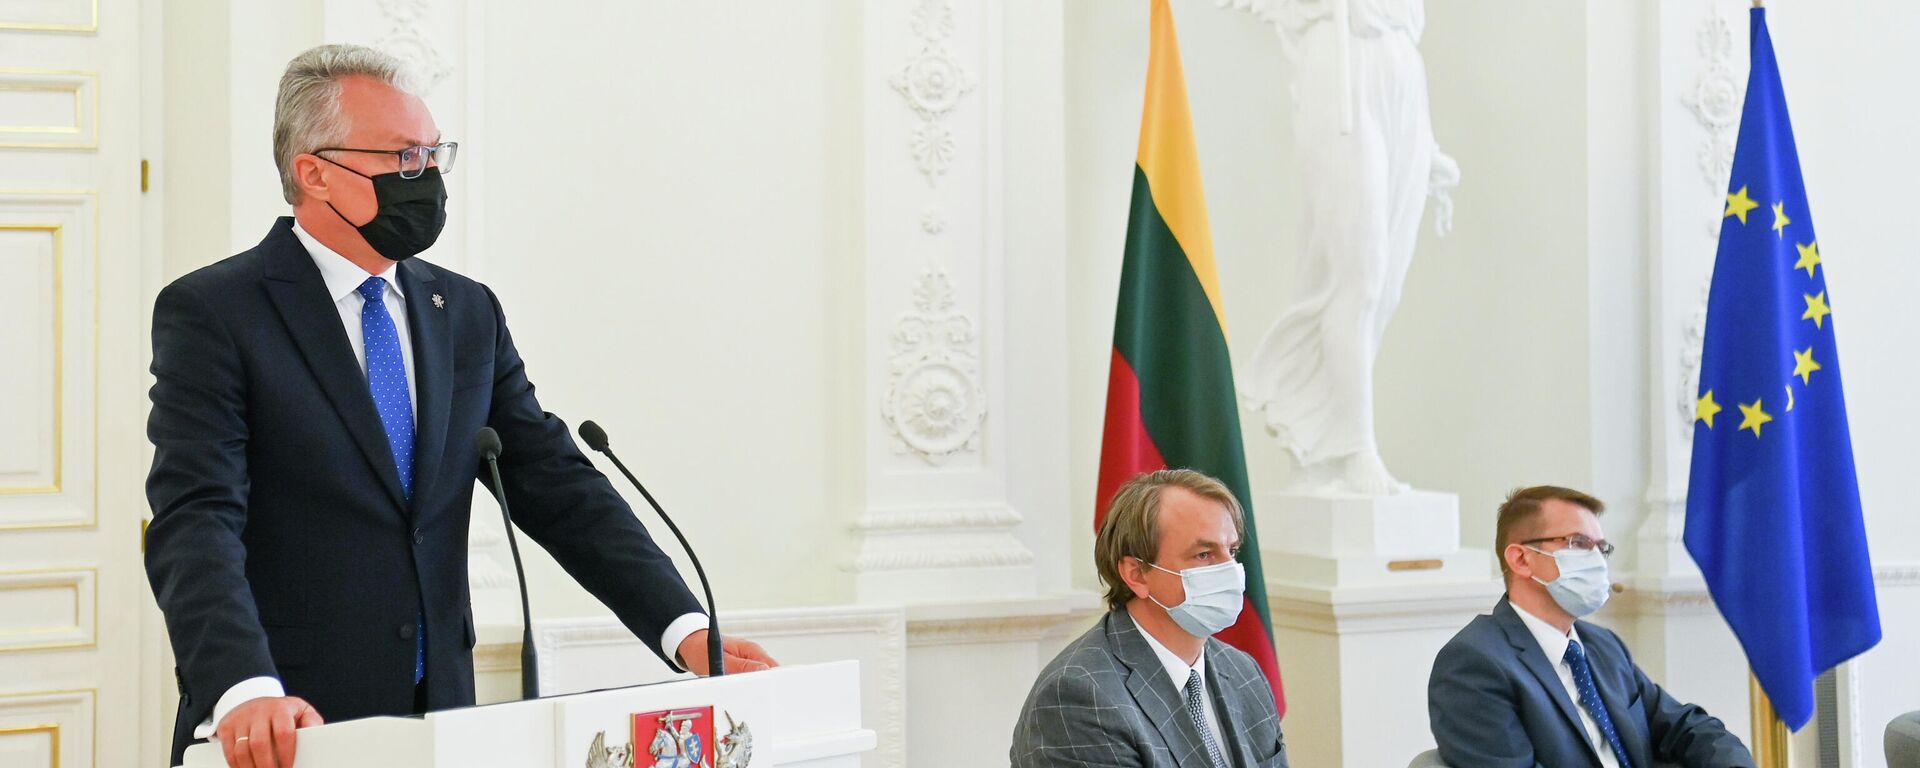 Президент Литвы Гитанас Науседа проводит Форум здоровья Пандемия COVID-19: кризис, уроки и возможности - Sputnik Литва, 1920, 21.06.2021